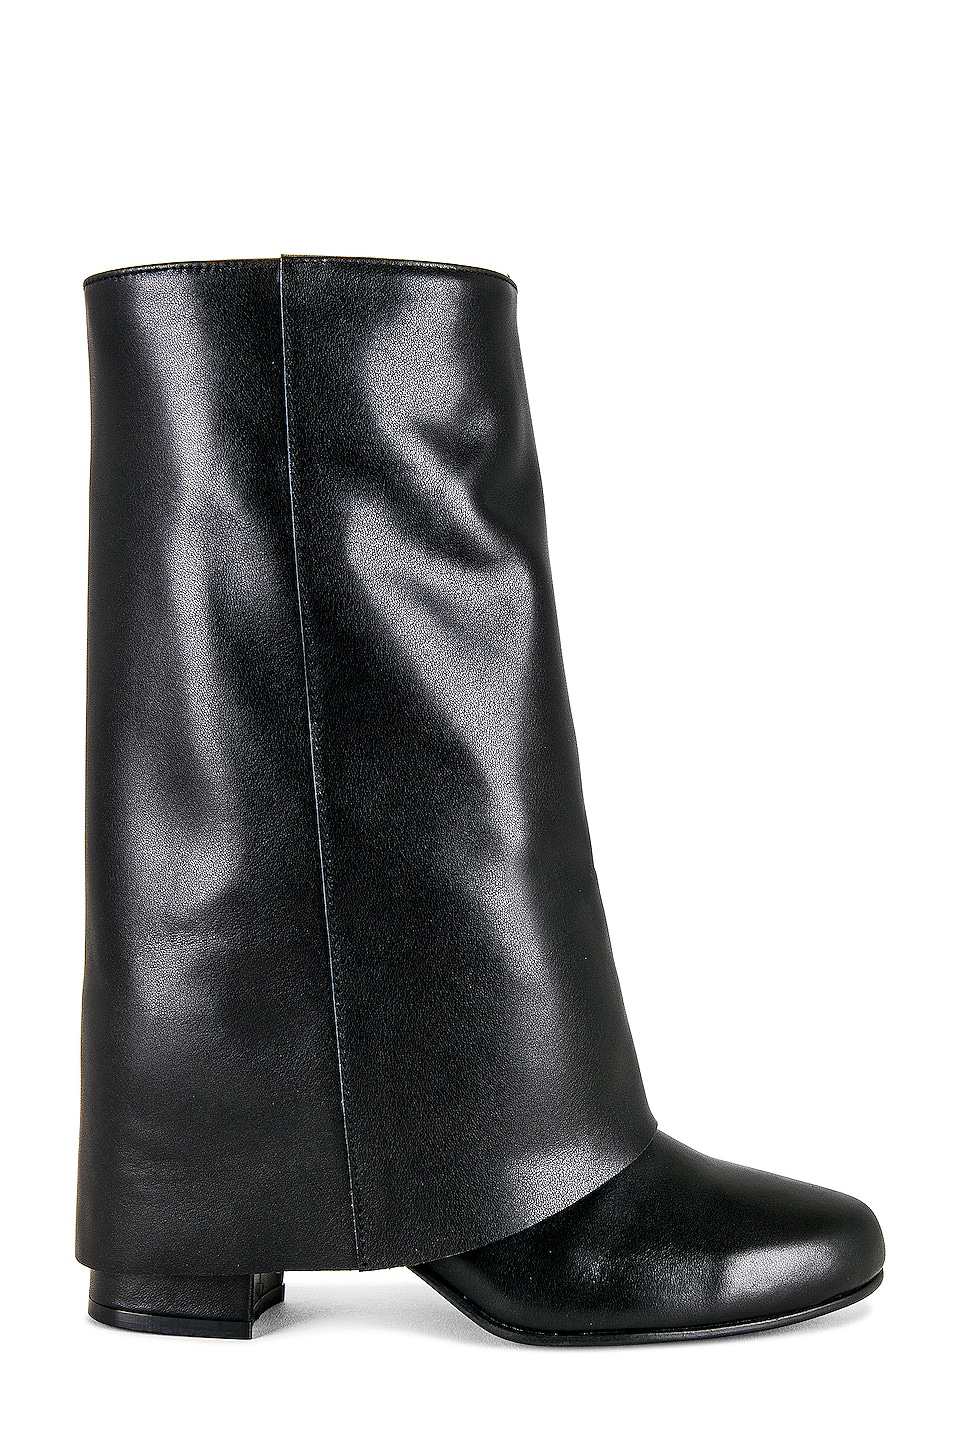 Reike Nen Folded Long Boots in Black | REVOLVE